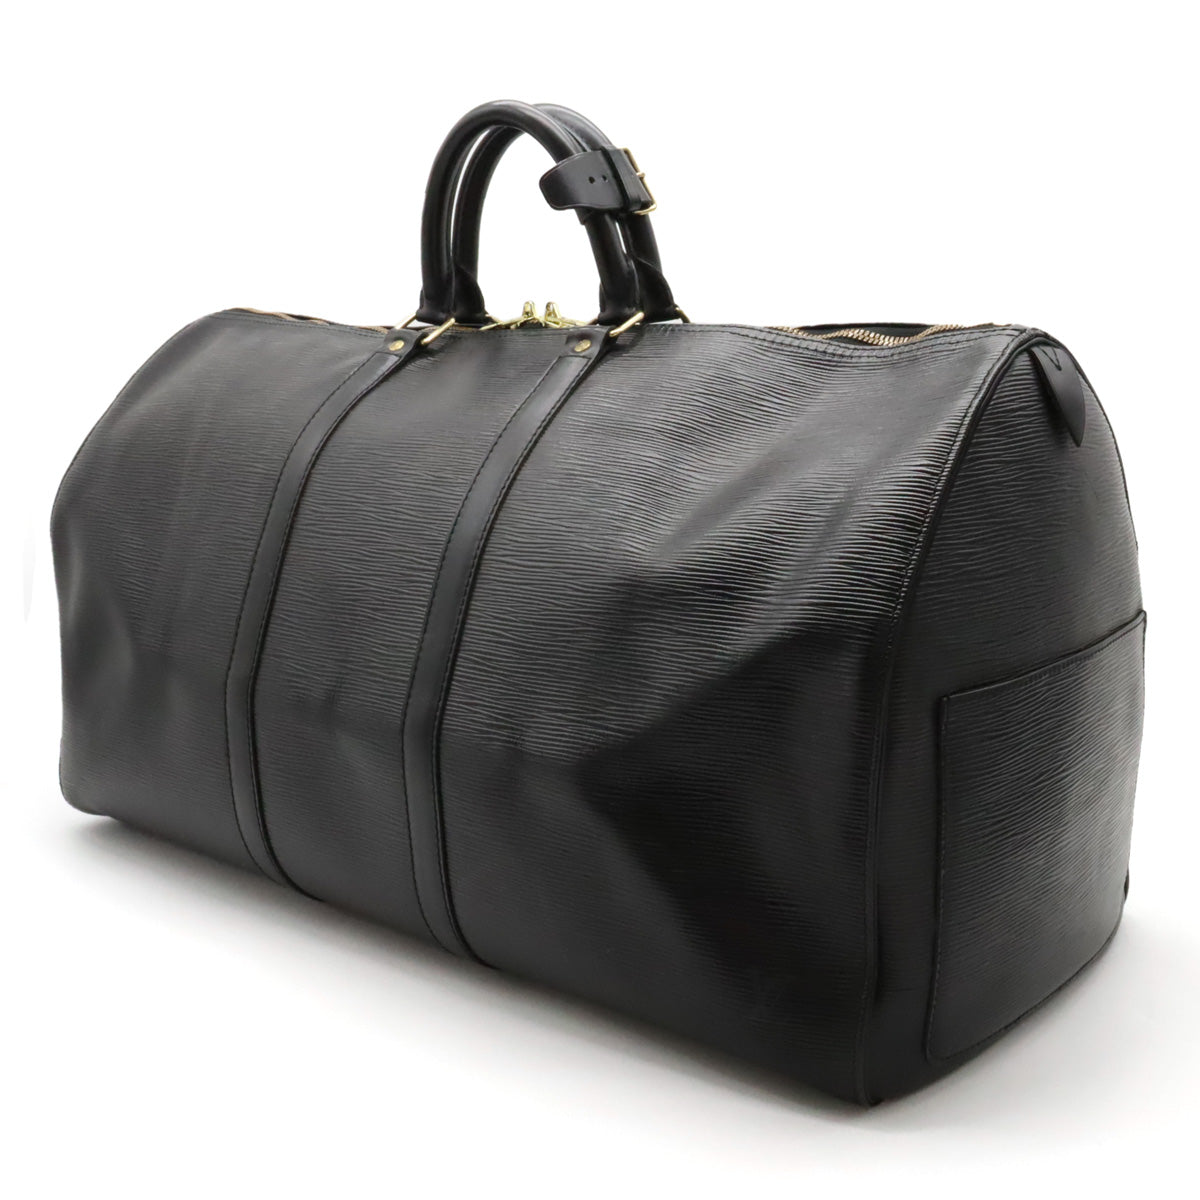 LOUIS VUITTON Louis Vuitton Epic Kypopur 55 Boston Bag Travel Bag Leather Noir Black M42952